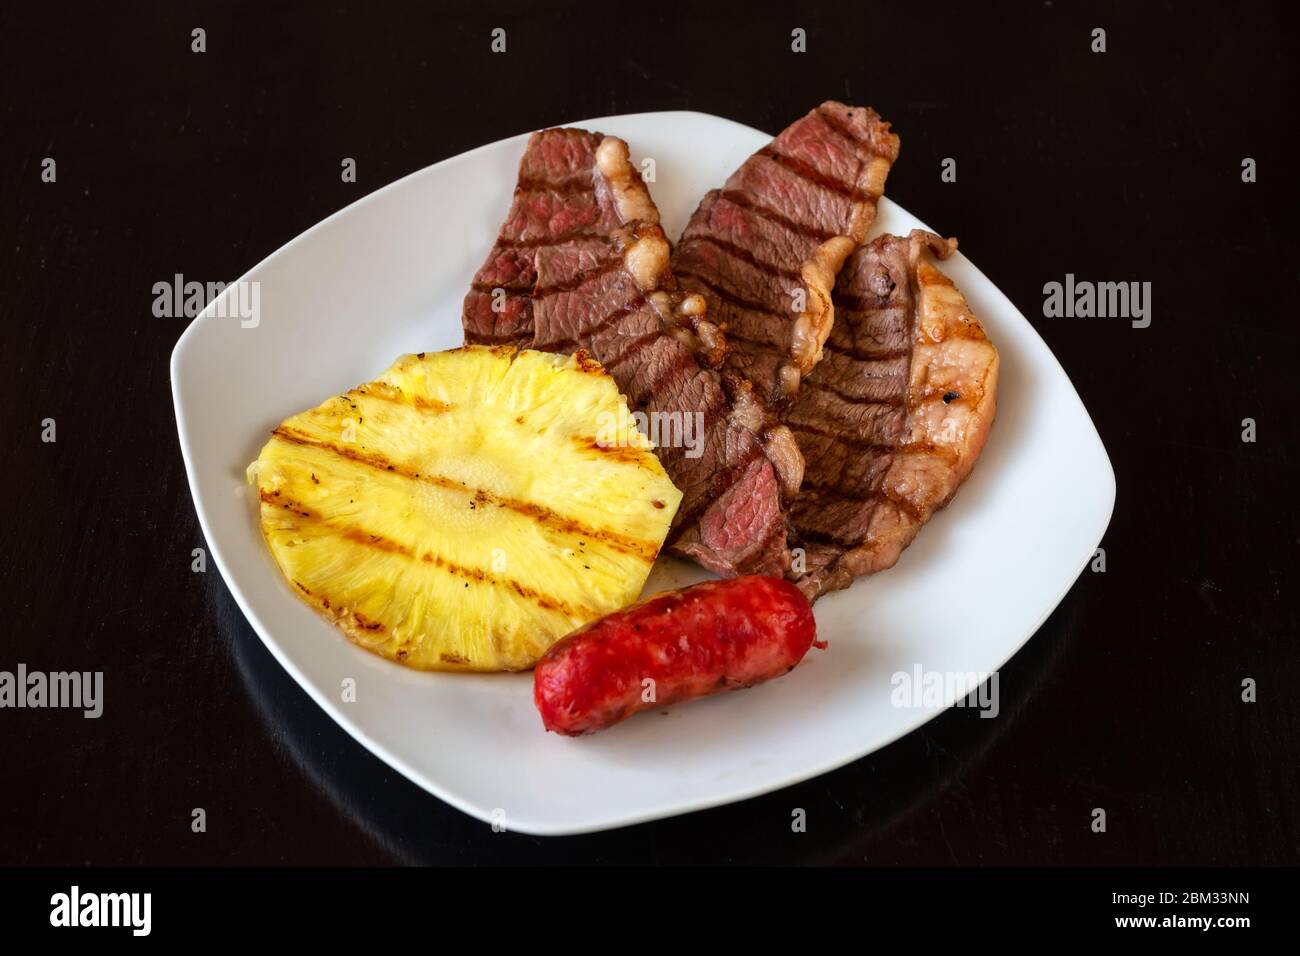 Les morceaux de viande sont juteux, hachés, avec ananas et saucisse sur une assiette blanche. Arrière-plan noir foncé. Gros plan. Banque D'Images